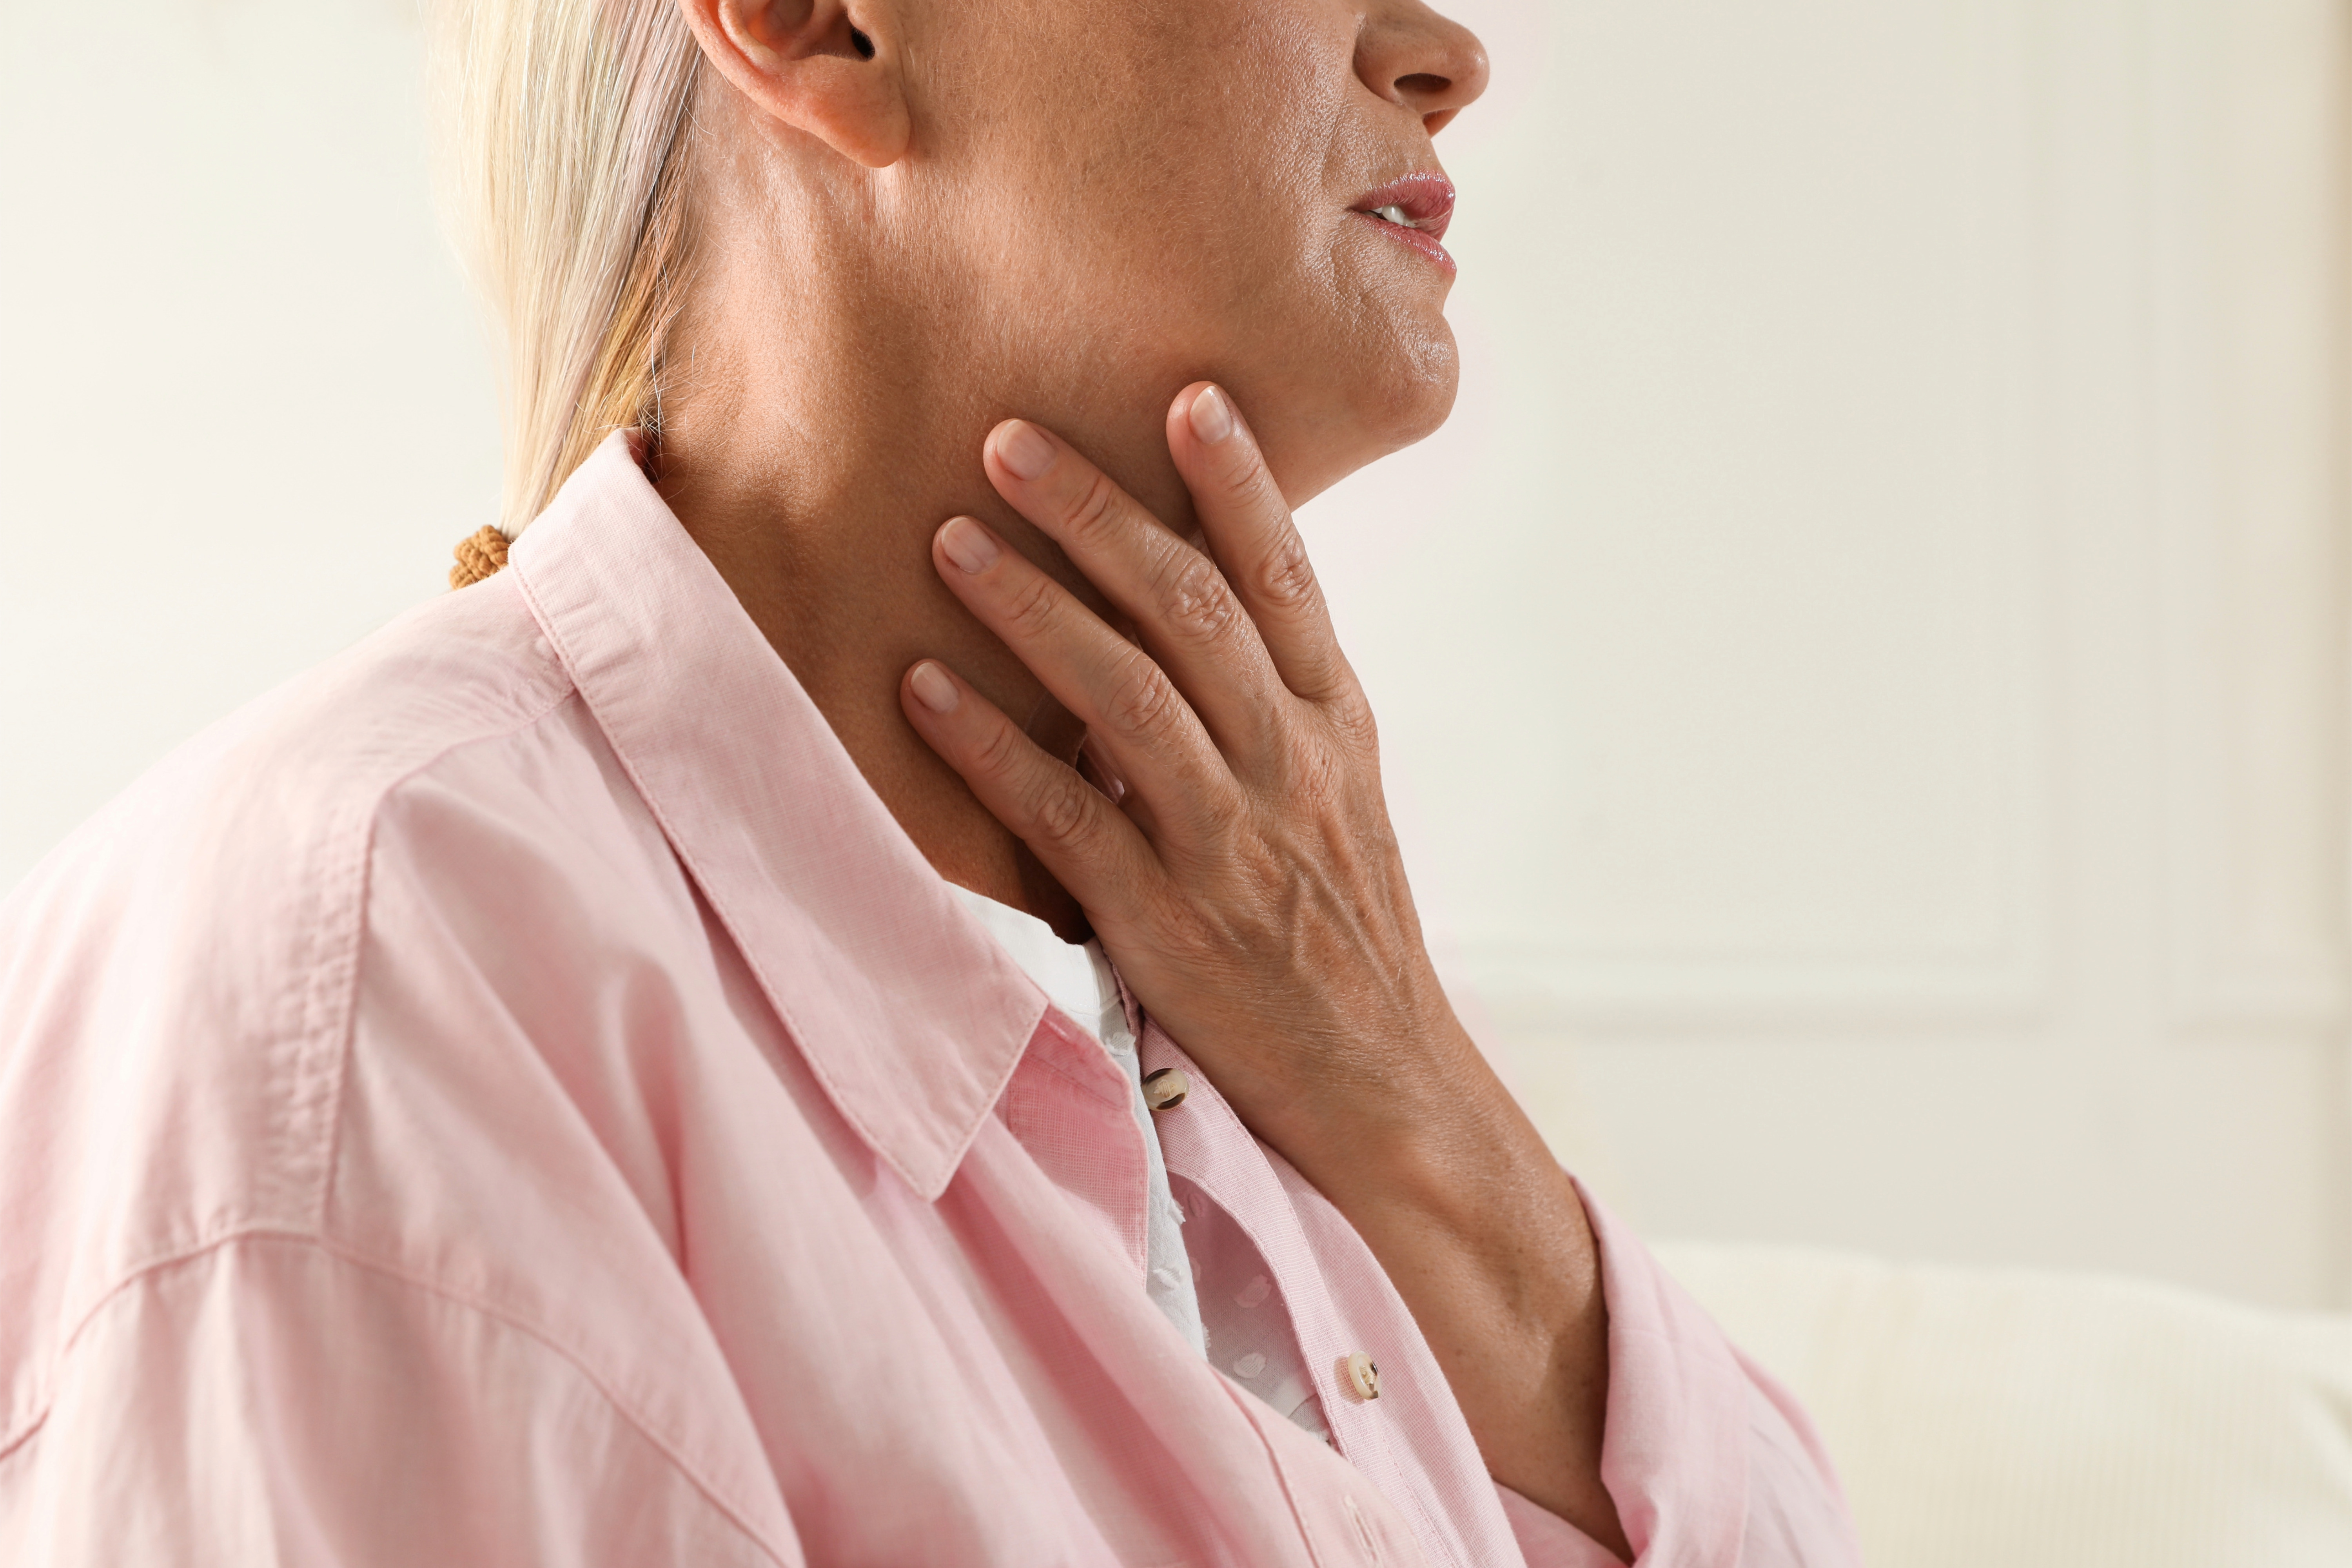 Settimana tiroide, esperti, 'per 6 mln pi informazione e meno esami inutili'